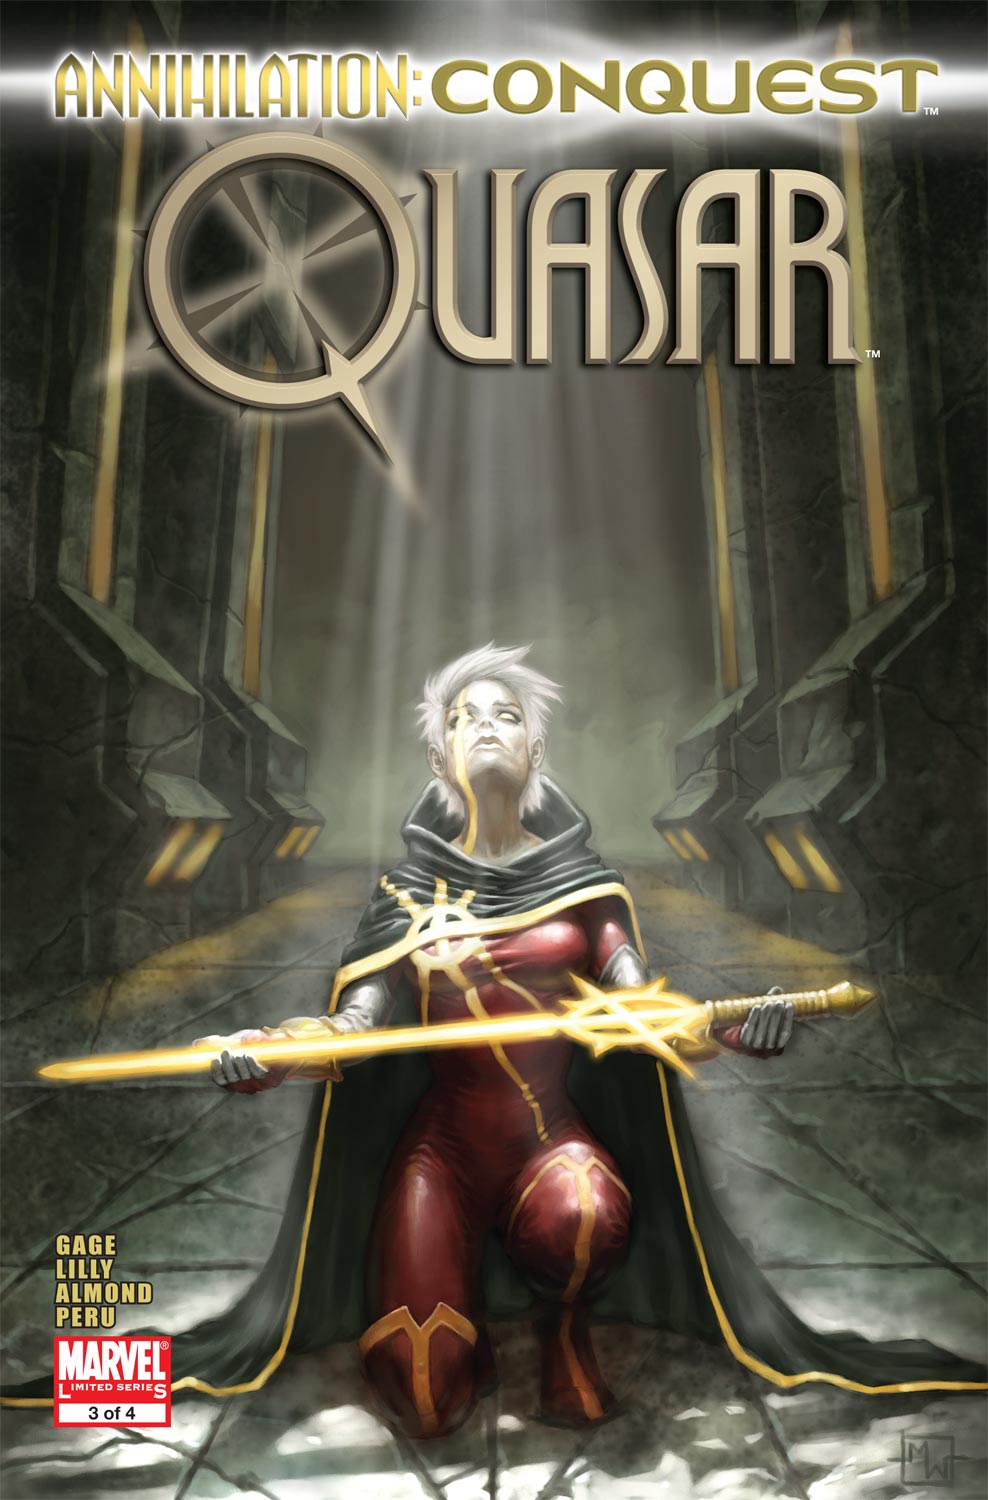 Annihilation: Conquest - Quasar (2007) #3